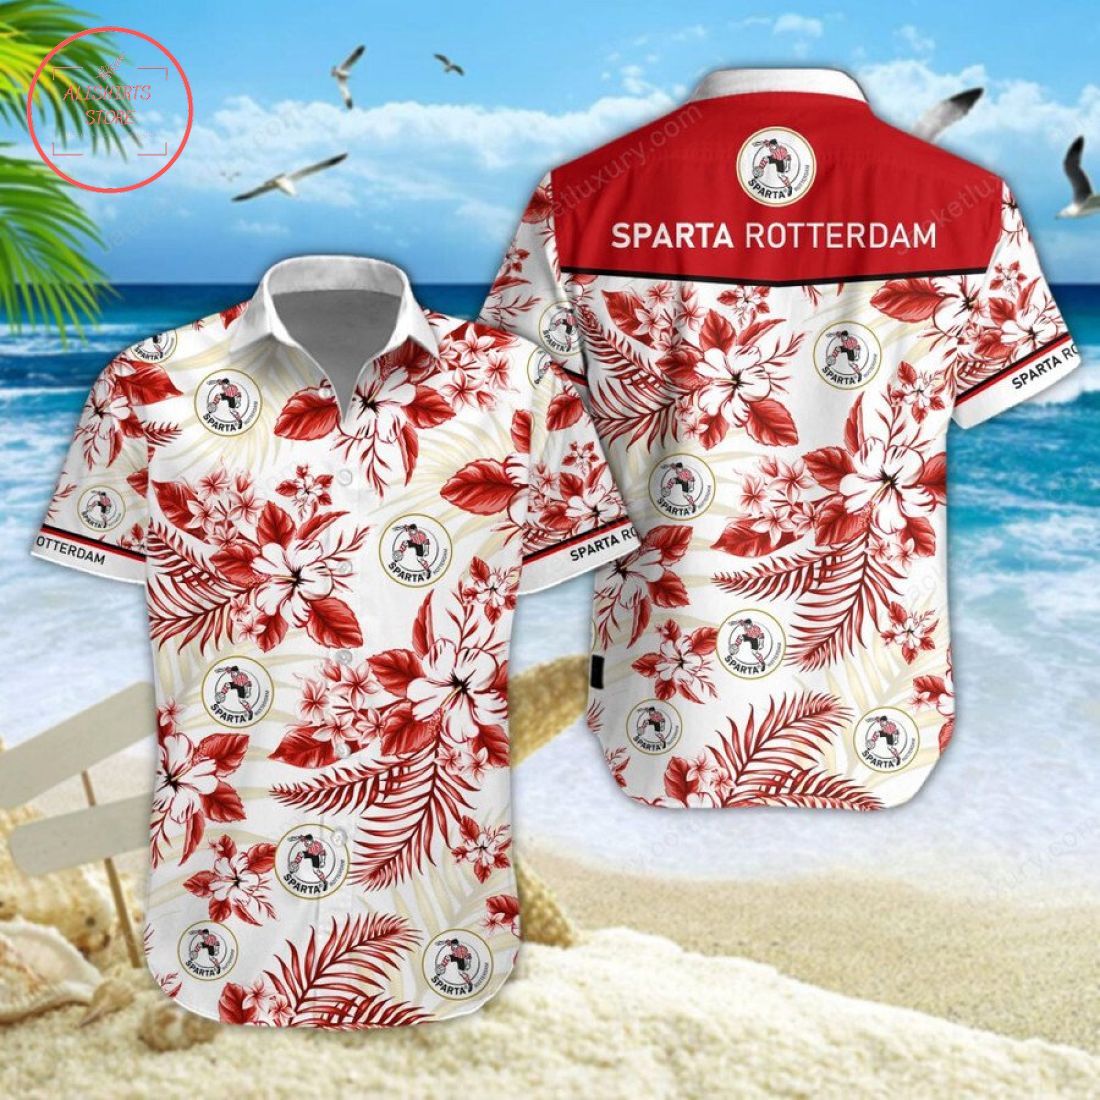 Sparta Rotterdam Hawaiian Shirt and Shorts